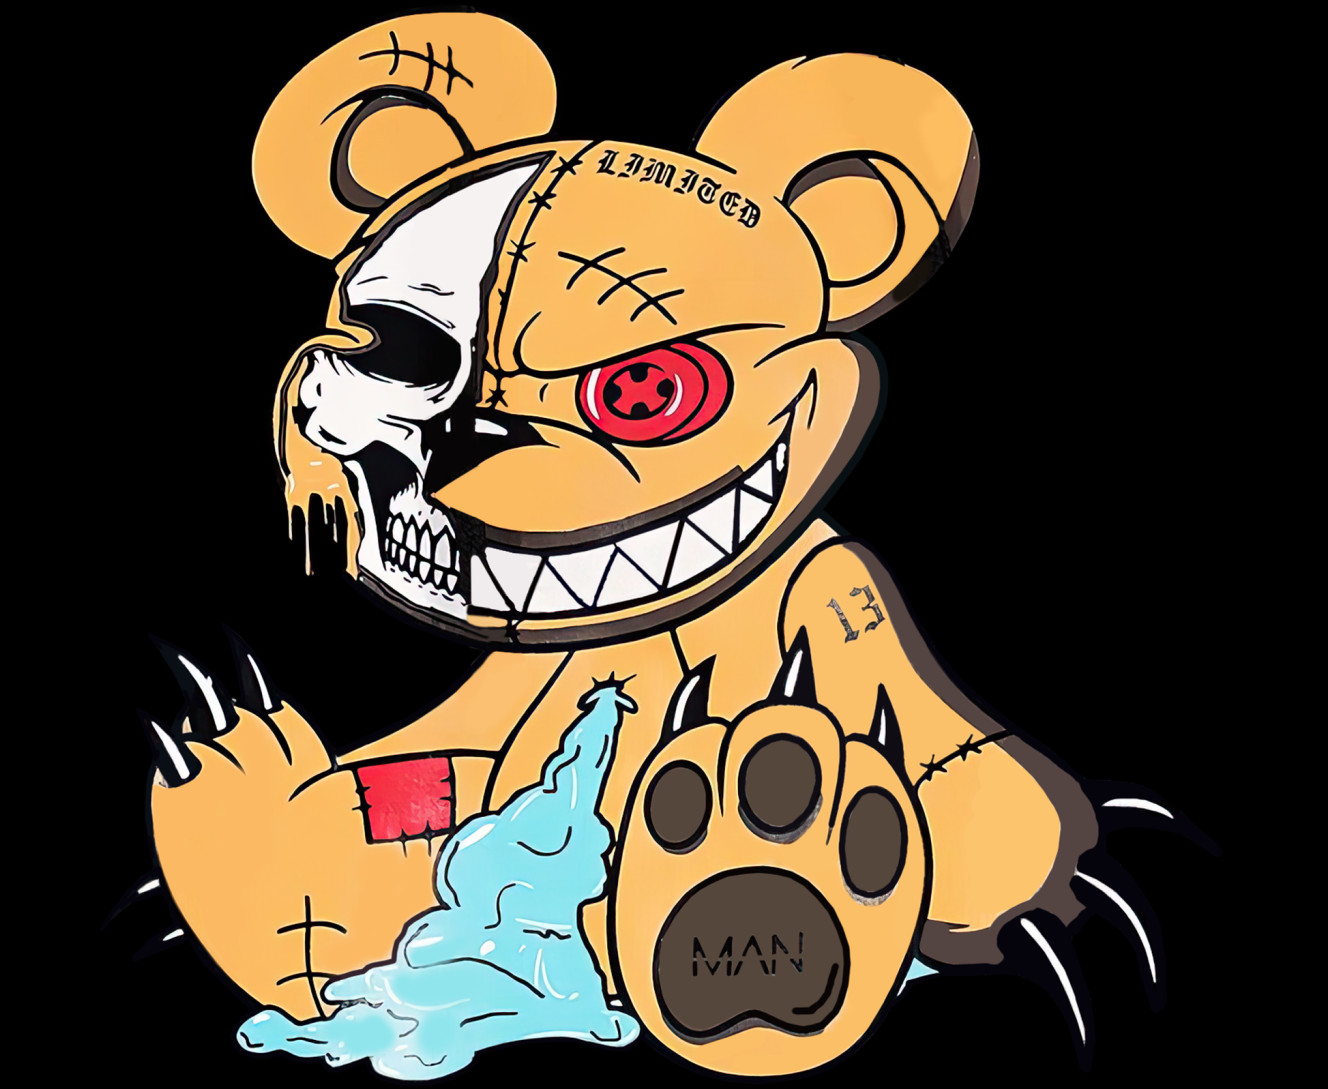 Angry teddy bear